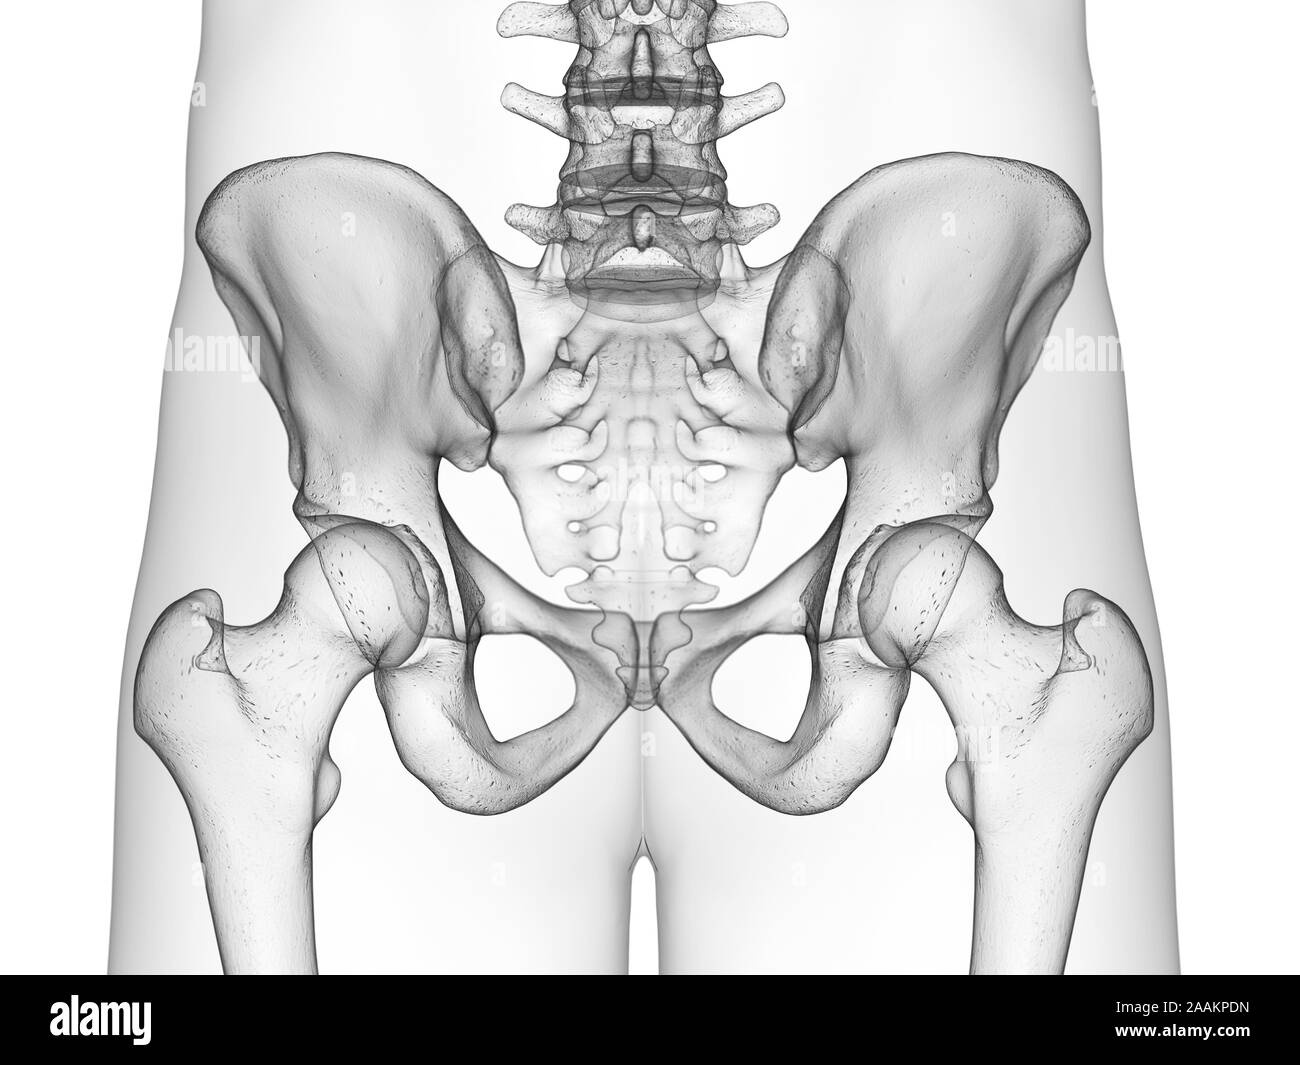 Os de la hanche, l'illustration de l'ordinateur. Banque D'Images